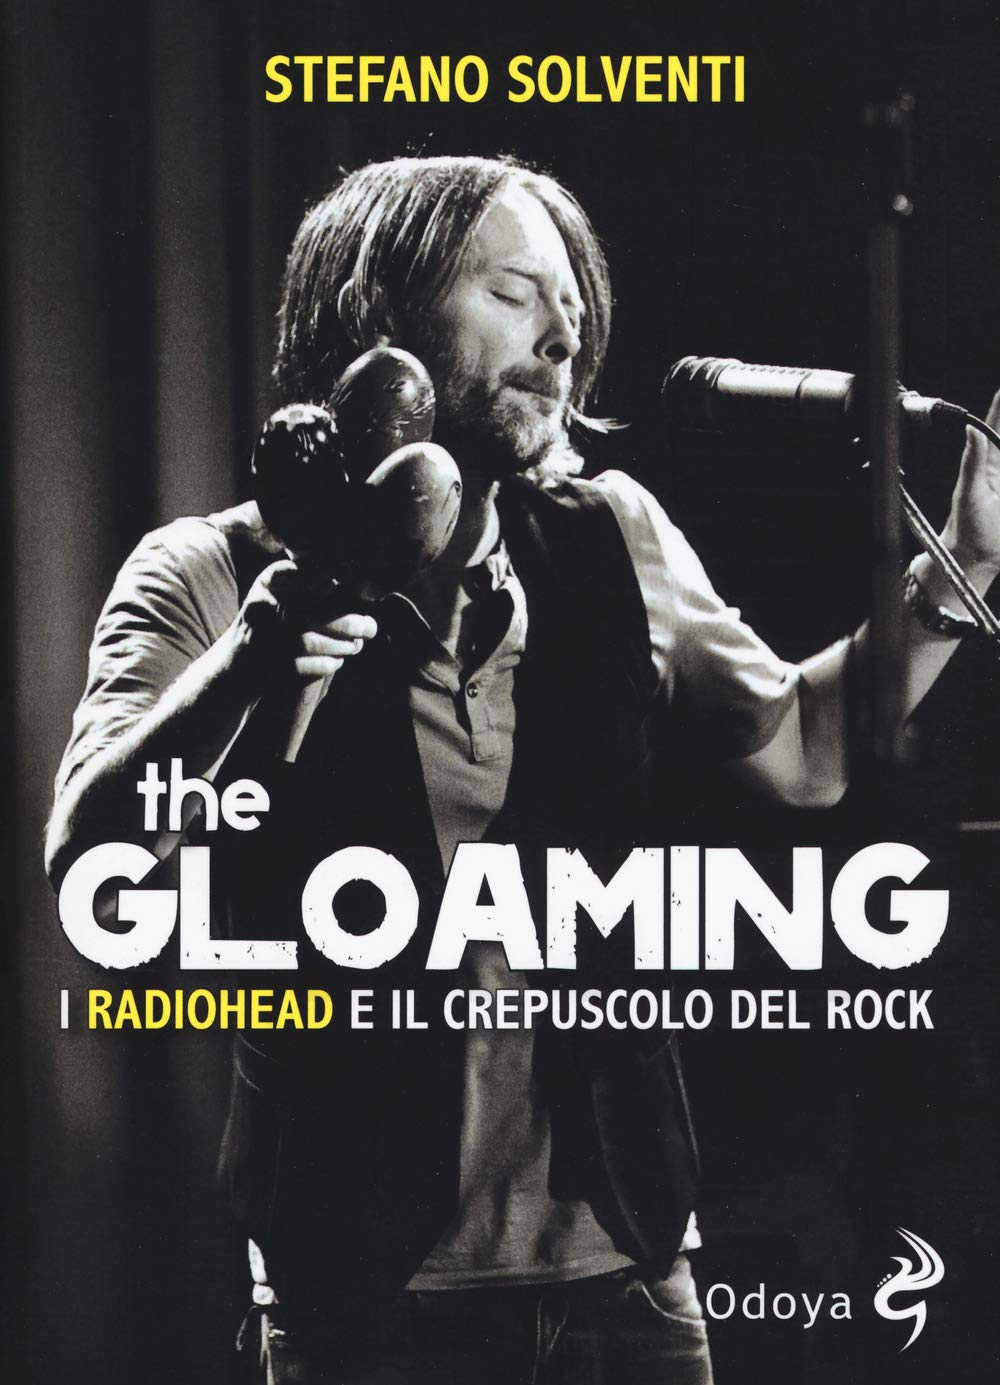 Libri Stefano Solventi - The Gloaming. I Radiohead E Il Crepuscolo Del Rock NUOVO SIGILLATO, EDIZIONE DEL 30/08/2018 SUBITO DISPONIBILE